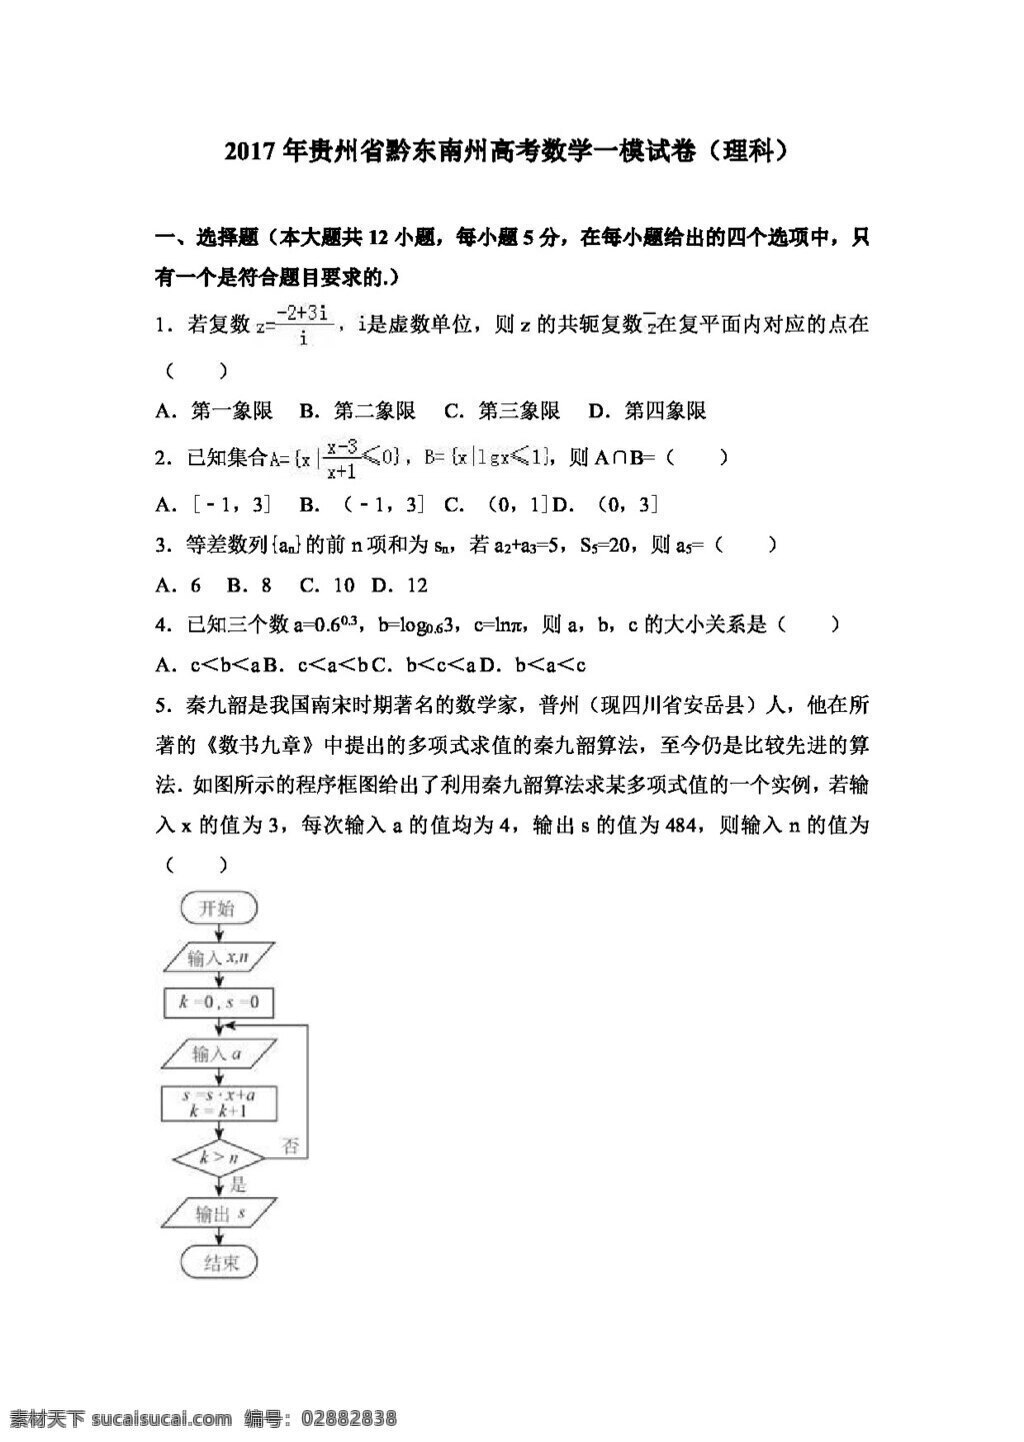 数学 人教 版 2017 年 贵州省 黔东南州 高考 模 试卷 理科 高考专区 人教版